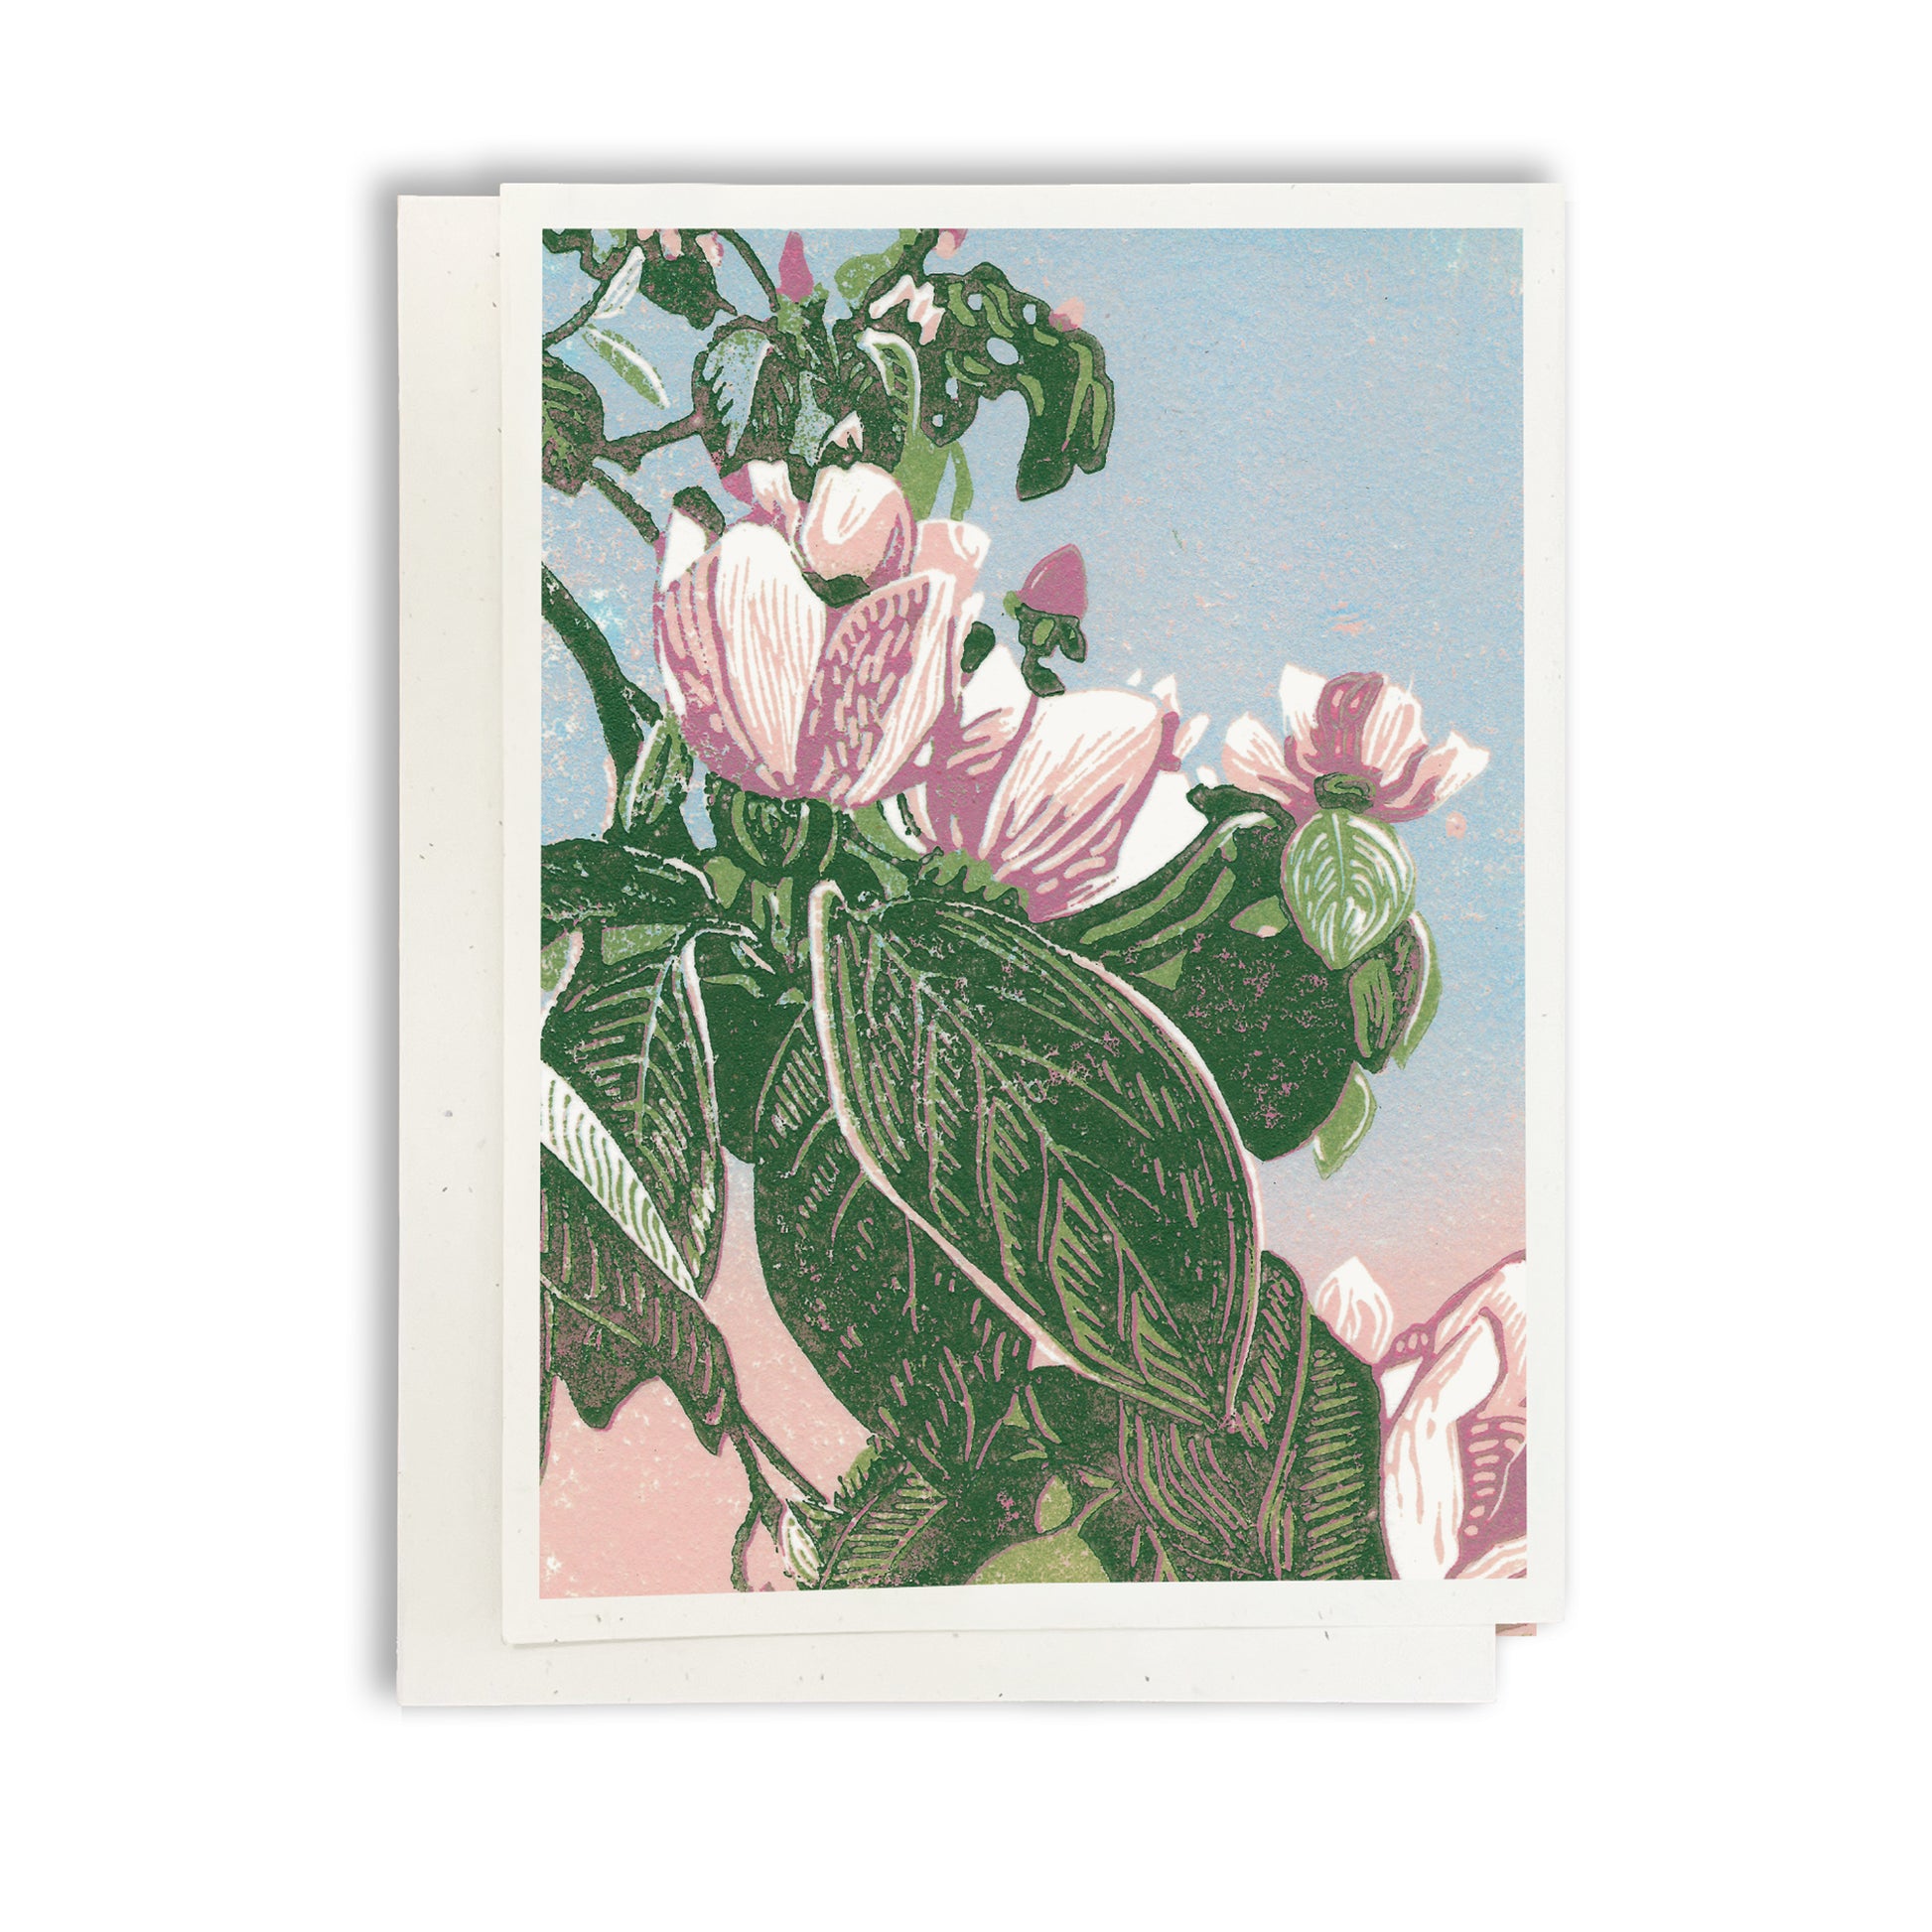 En El Jardin card by Natalia Wohletz of Peninsula Prints.